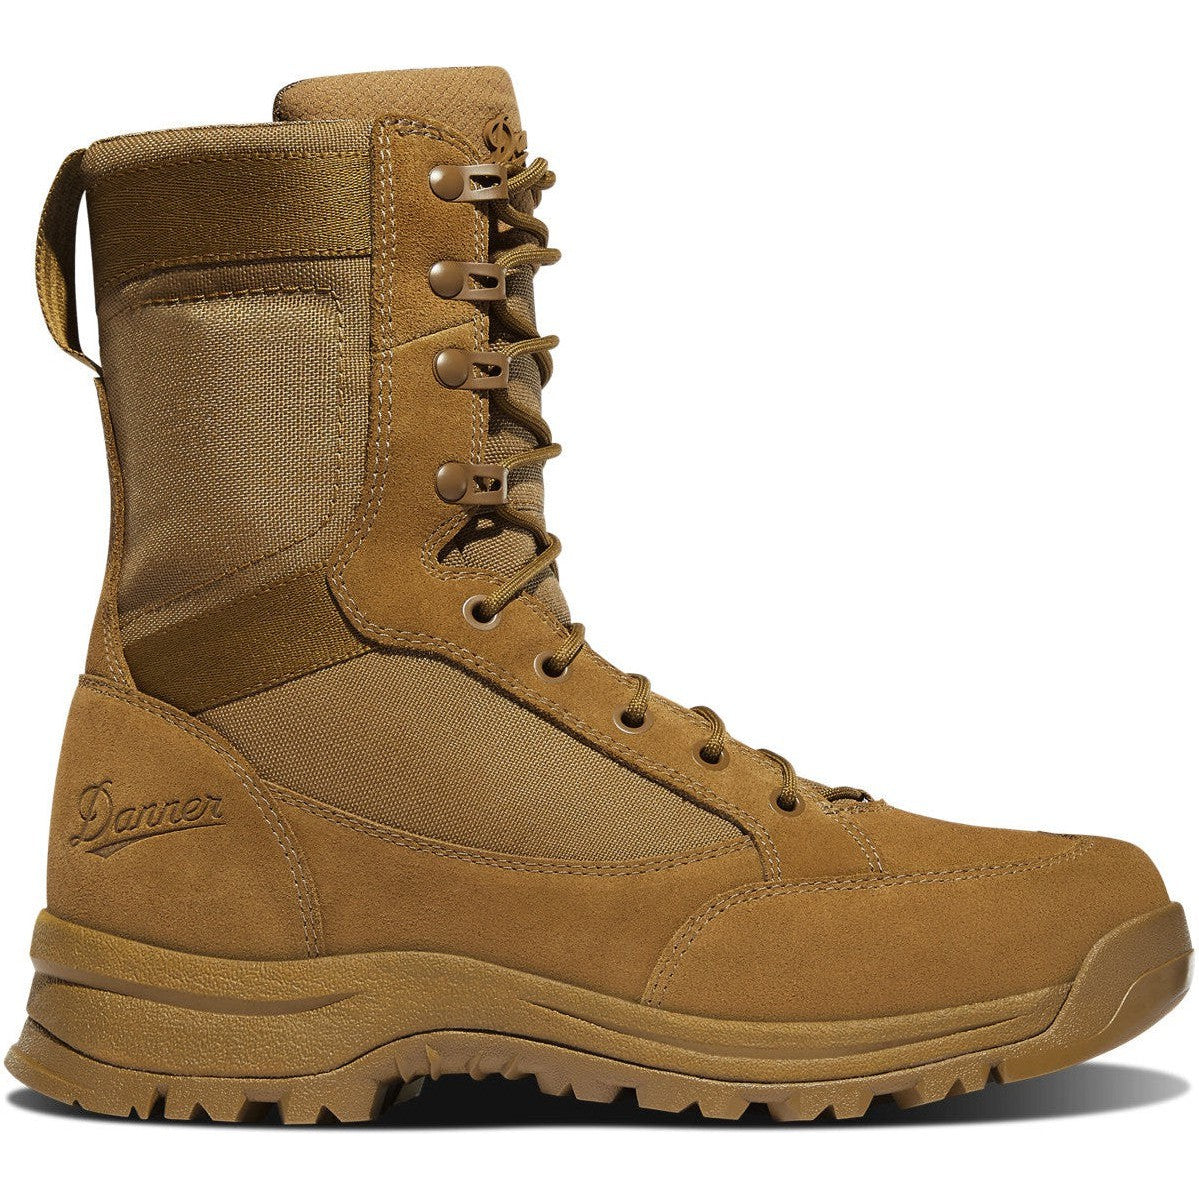 Danner Men's Tanicus 8" Military Boot -Coyote- 55316 3 / Medium / Coyote - Overlook Boots